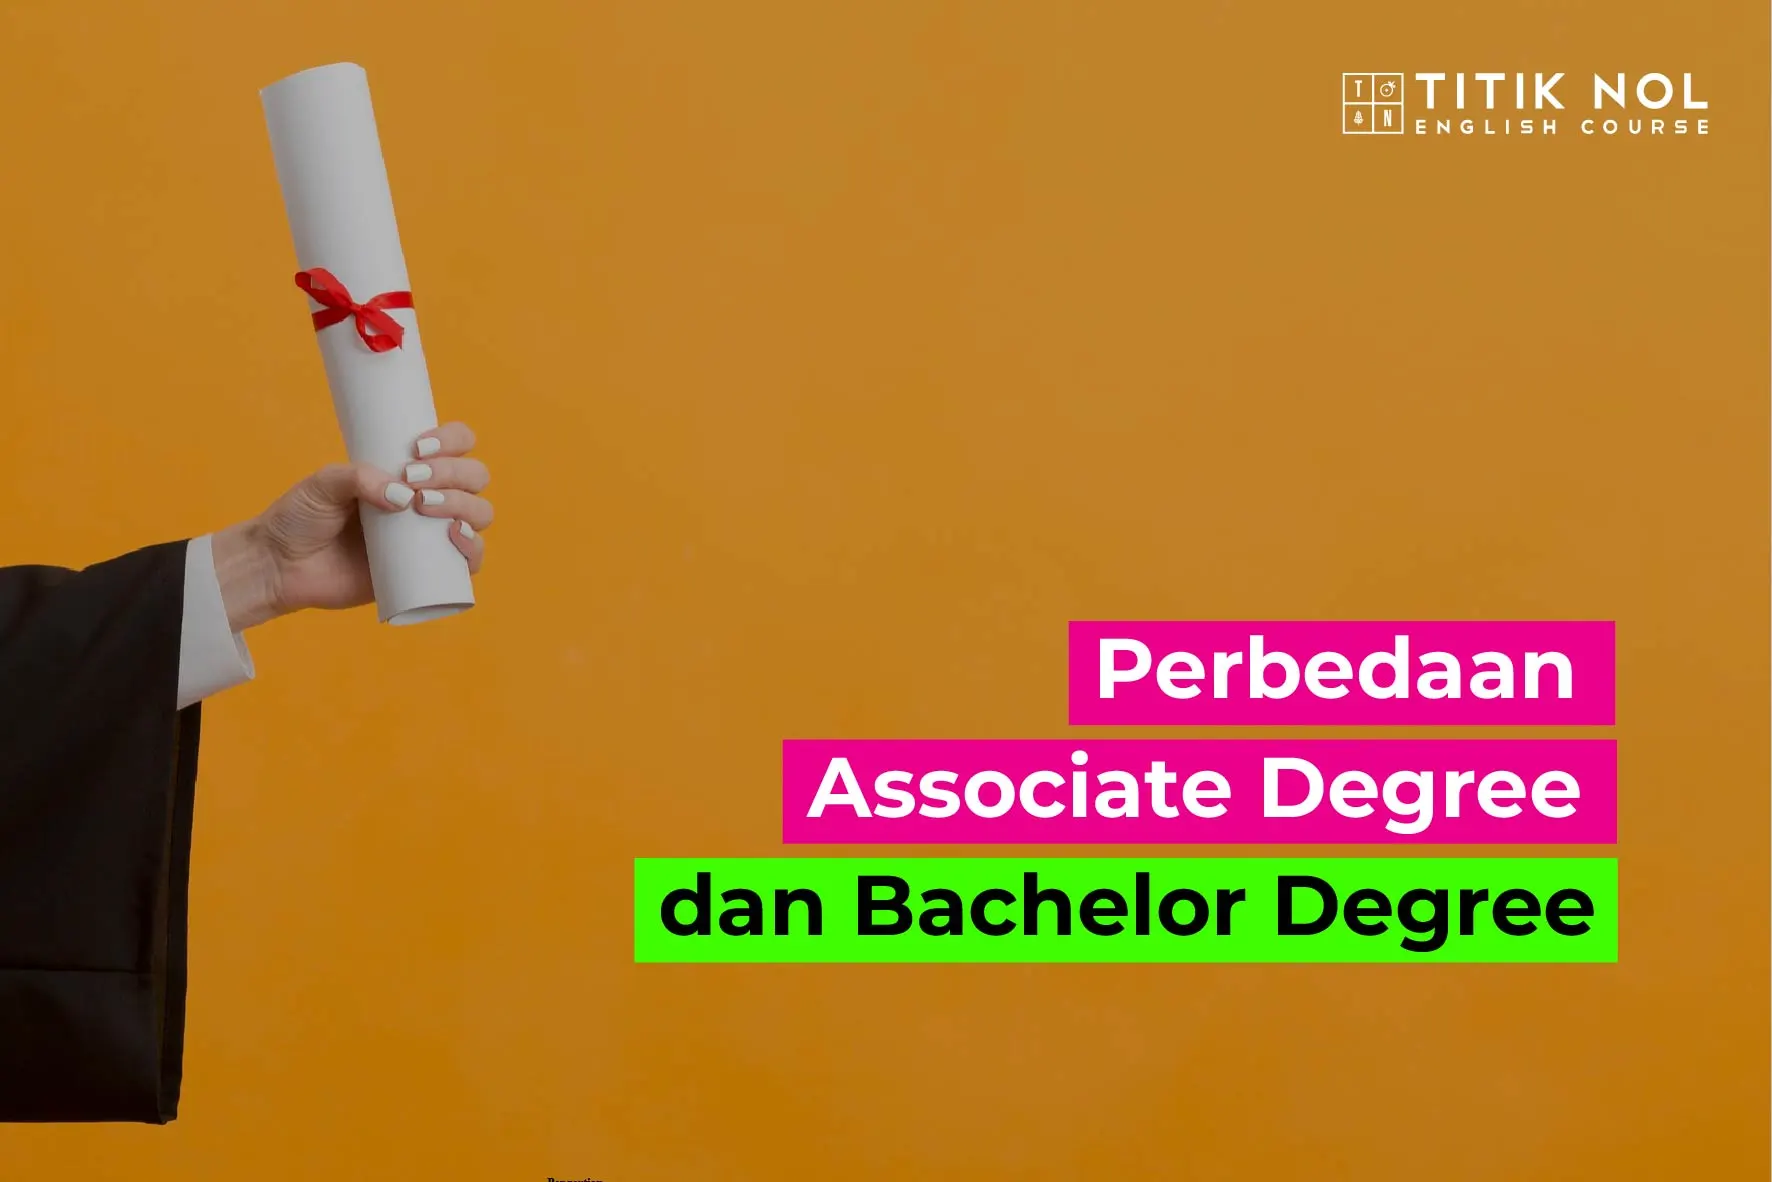 Associate Degree dan Bachelor Degree